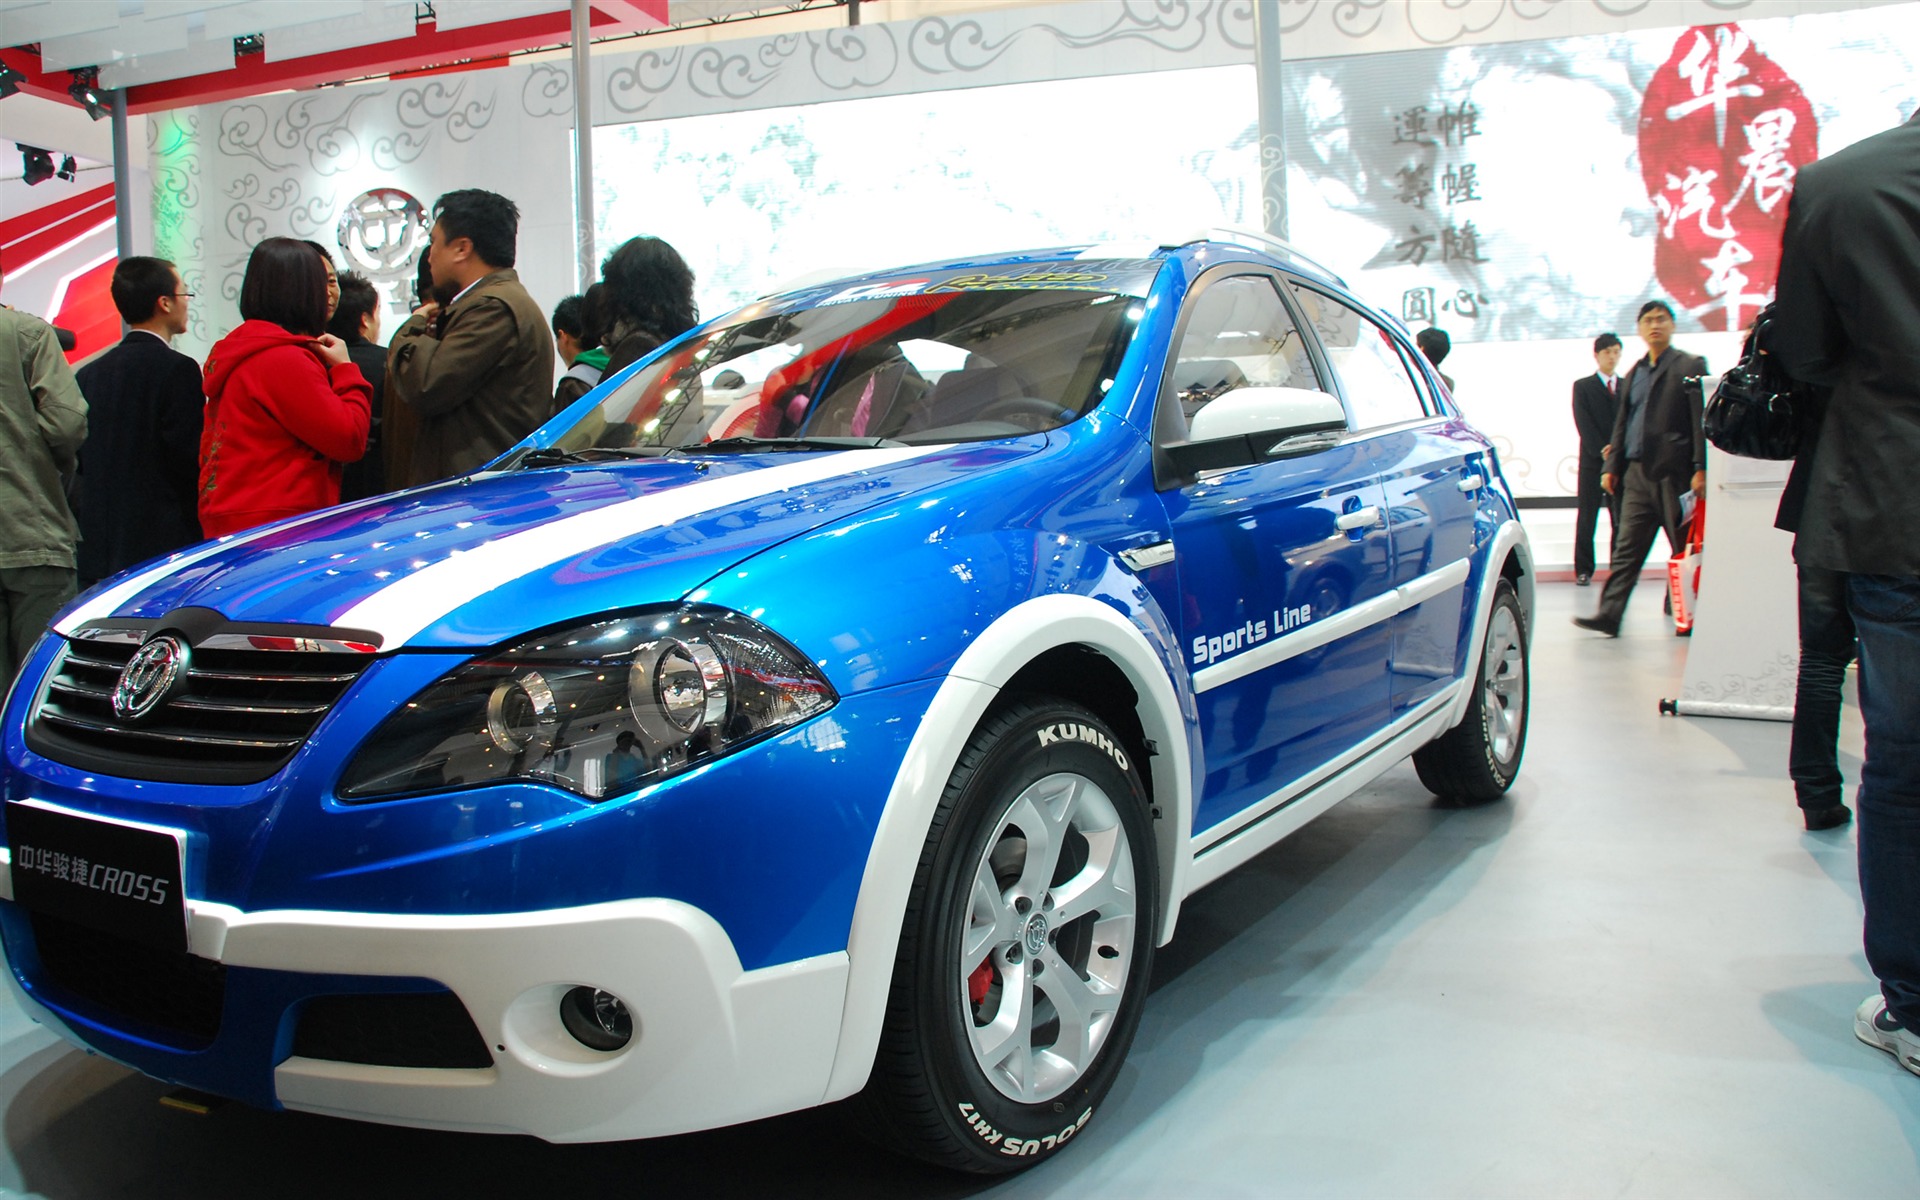 2010北京国际车展(一) (z321x123作品)21 - 1920x1200